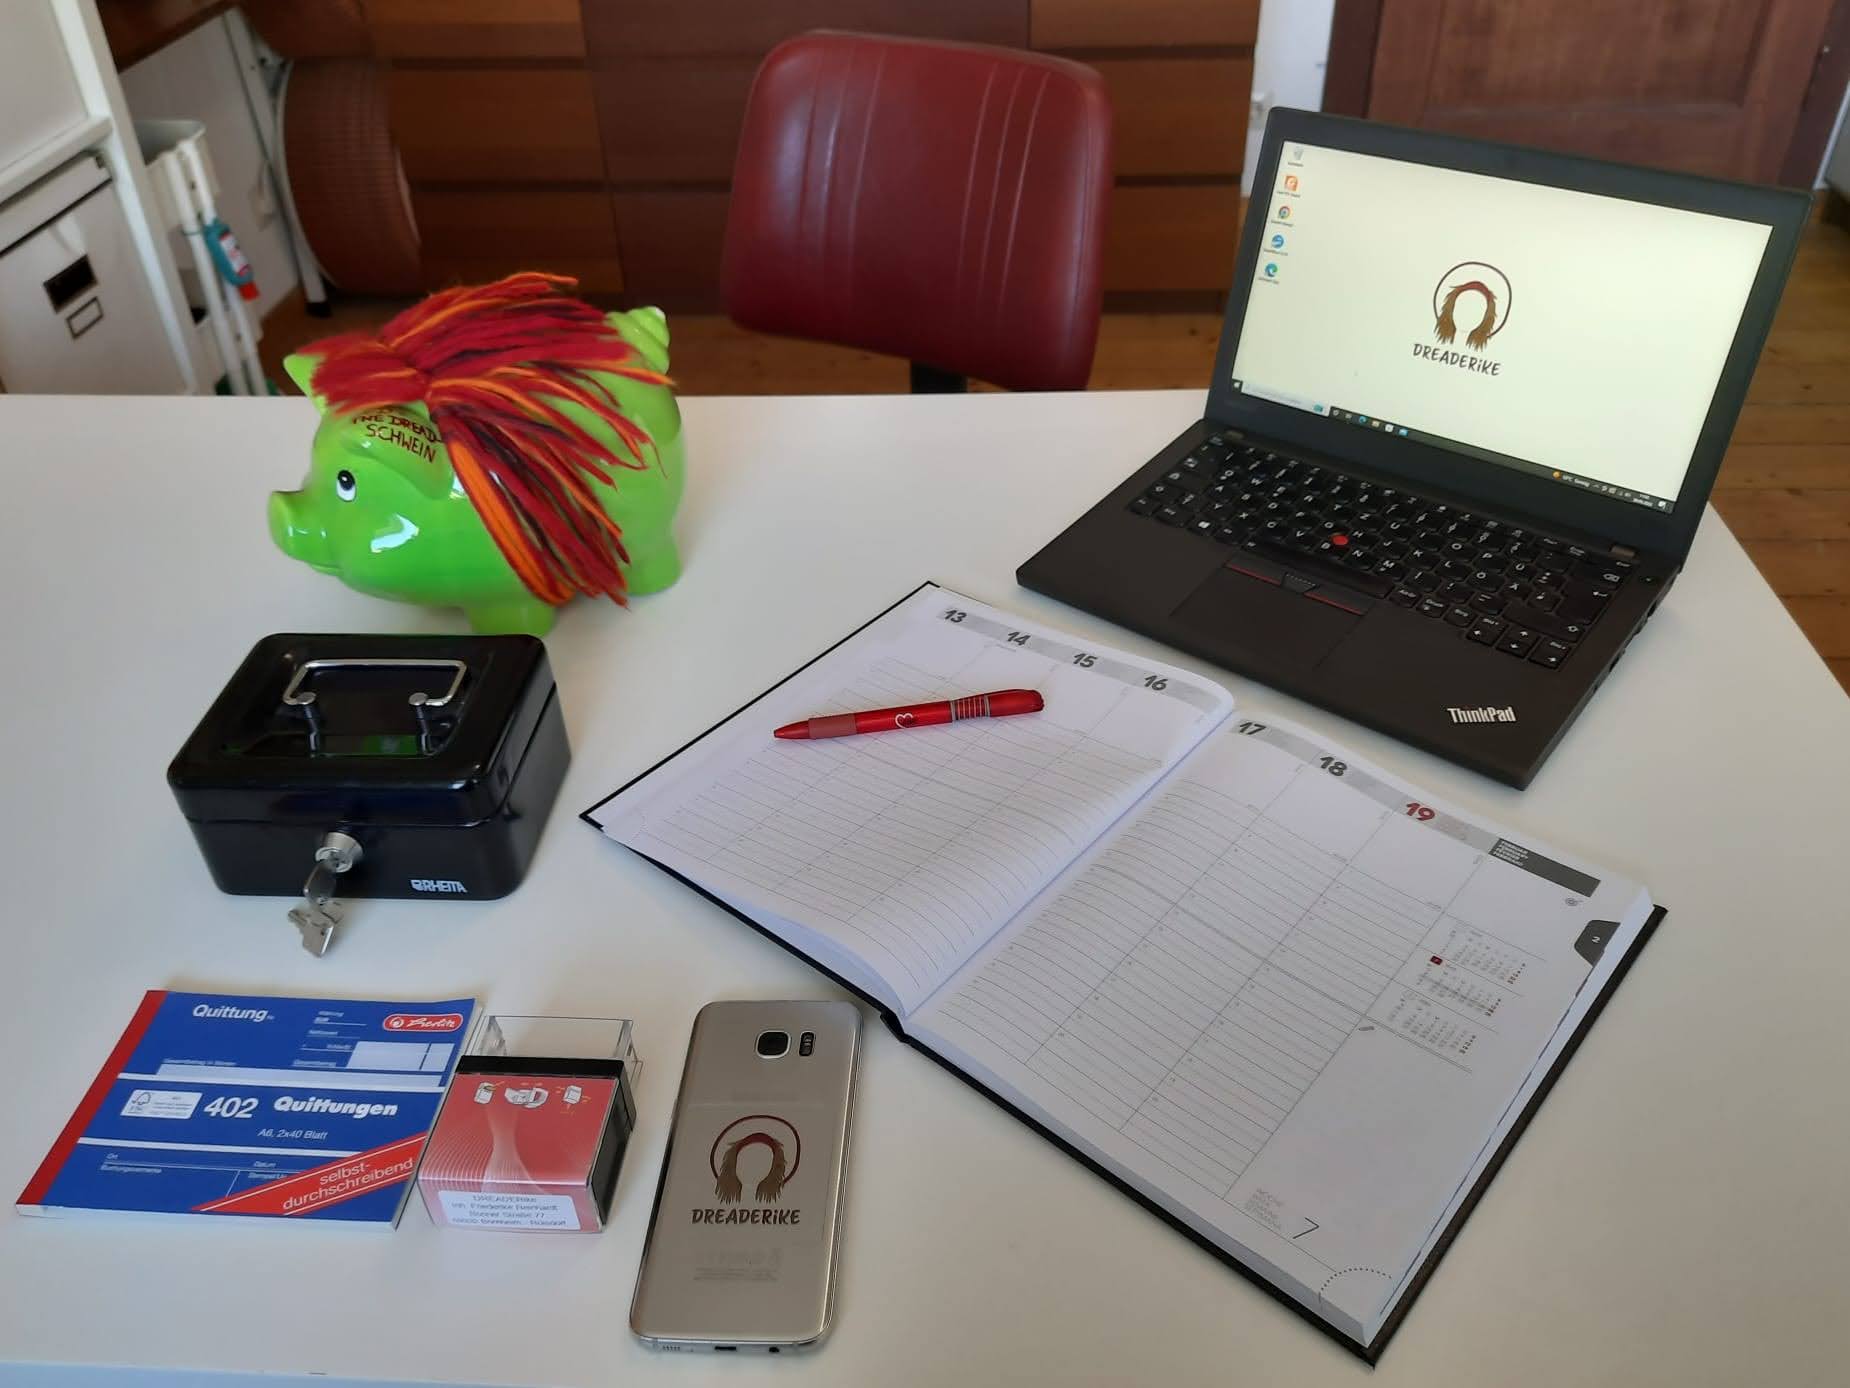 DREADERikes Business-Bereich: Ein Schreibtisch, auf dem ein Laptop mit dem DREDERike Logo steht. Außerdem liegen ein Kalender, ein roter Kugelschreiber, ein Handy mit dem DREADERike Logo, eine Kasse, Quittungsblock, Stempel und ein Sparschwein mit Wolldreadlocks auf dem Tisch. Vor dem Tisch steht ein dunkelroter Retro-Friseurstuhl.